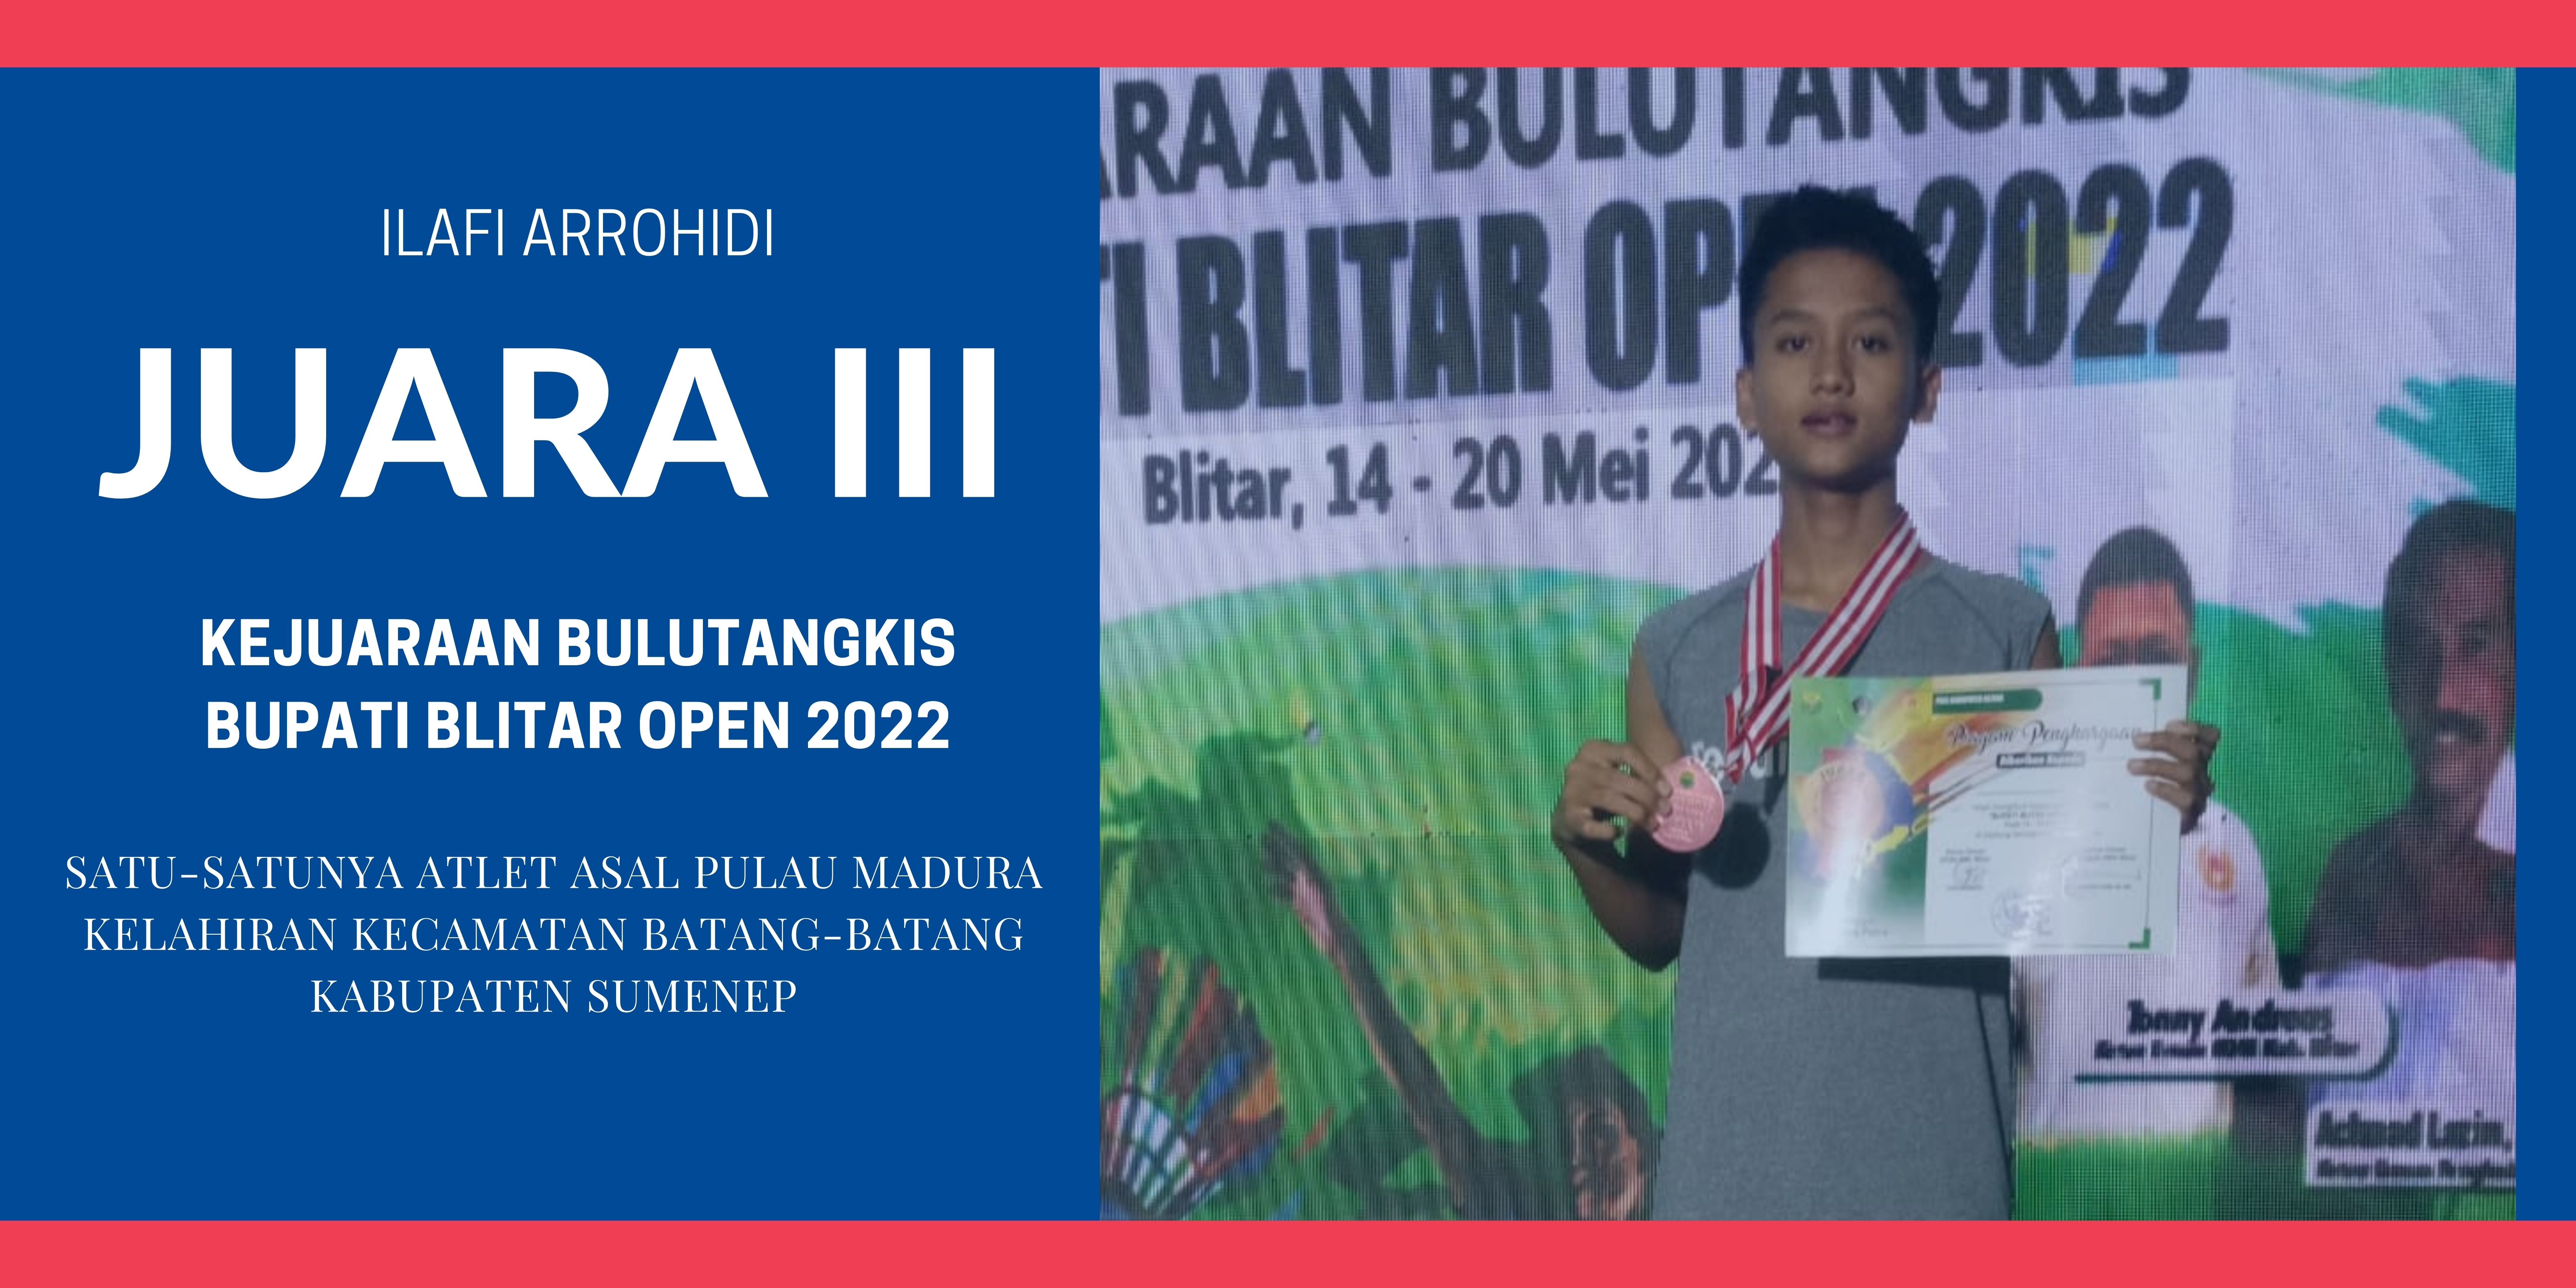 Ilafi Arrohidi, atlet asal Sumenep yang menjadi satu-satunya perwakilan Madura yang meraih juara pada Kejuaraan Bulutangkis Bupati Blitar Open 2022.